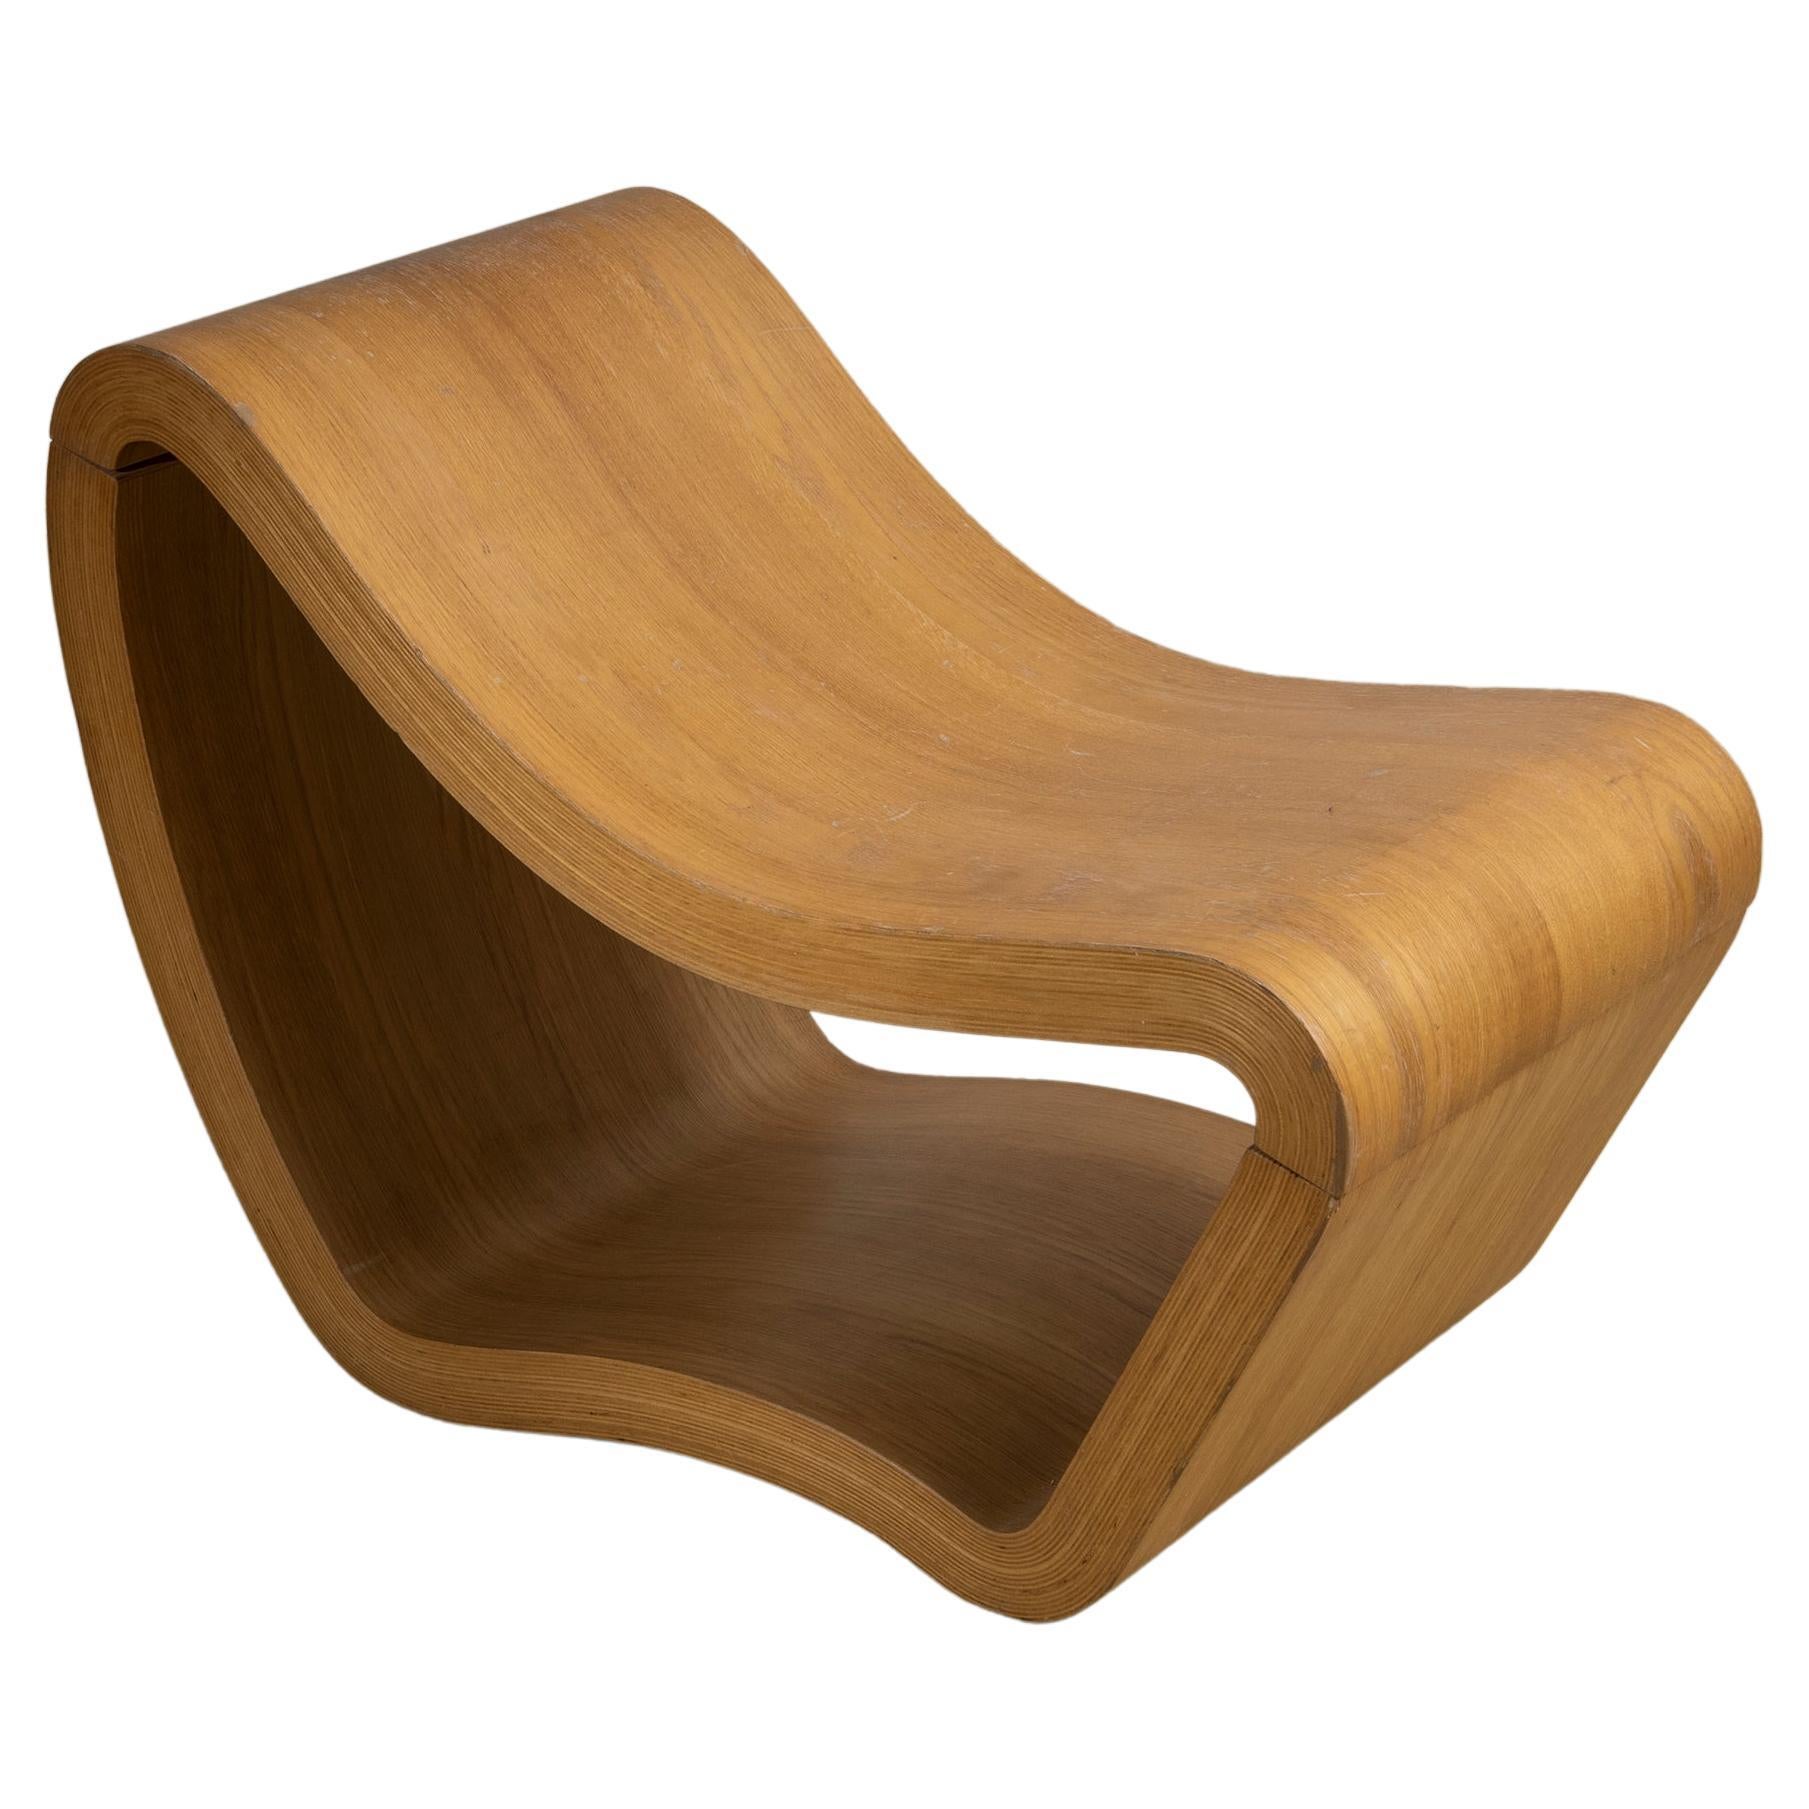 Seduta scultorea in legno curvato, produzione italiana anni 70